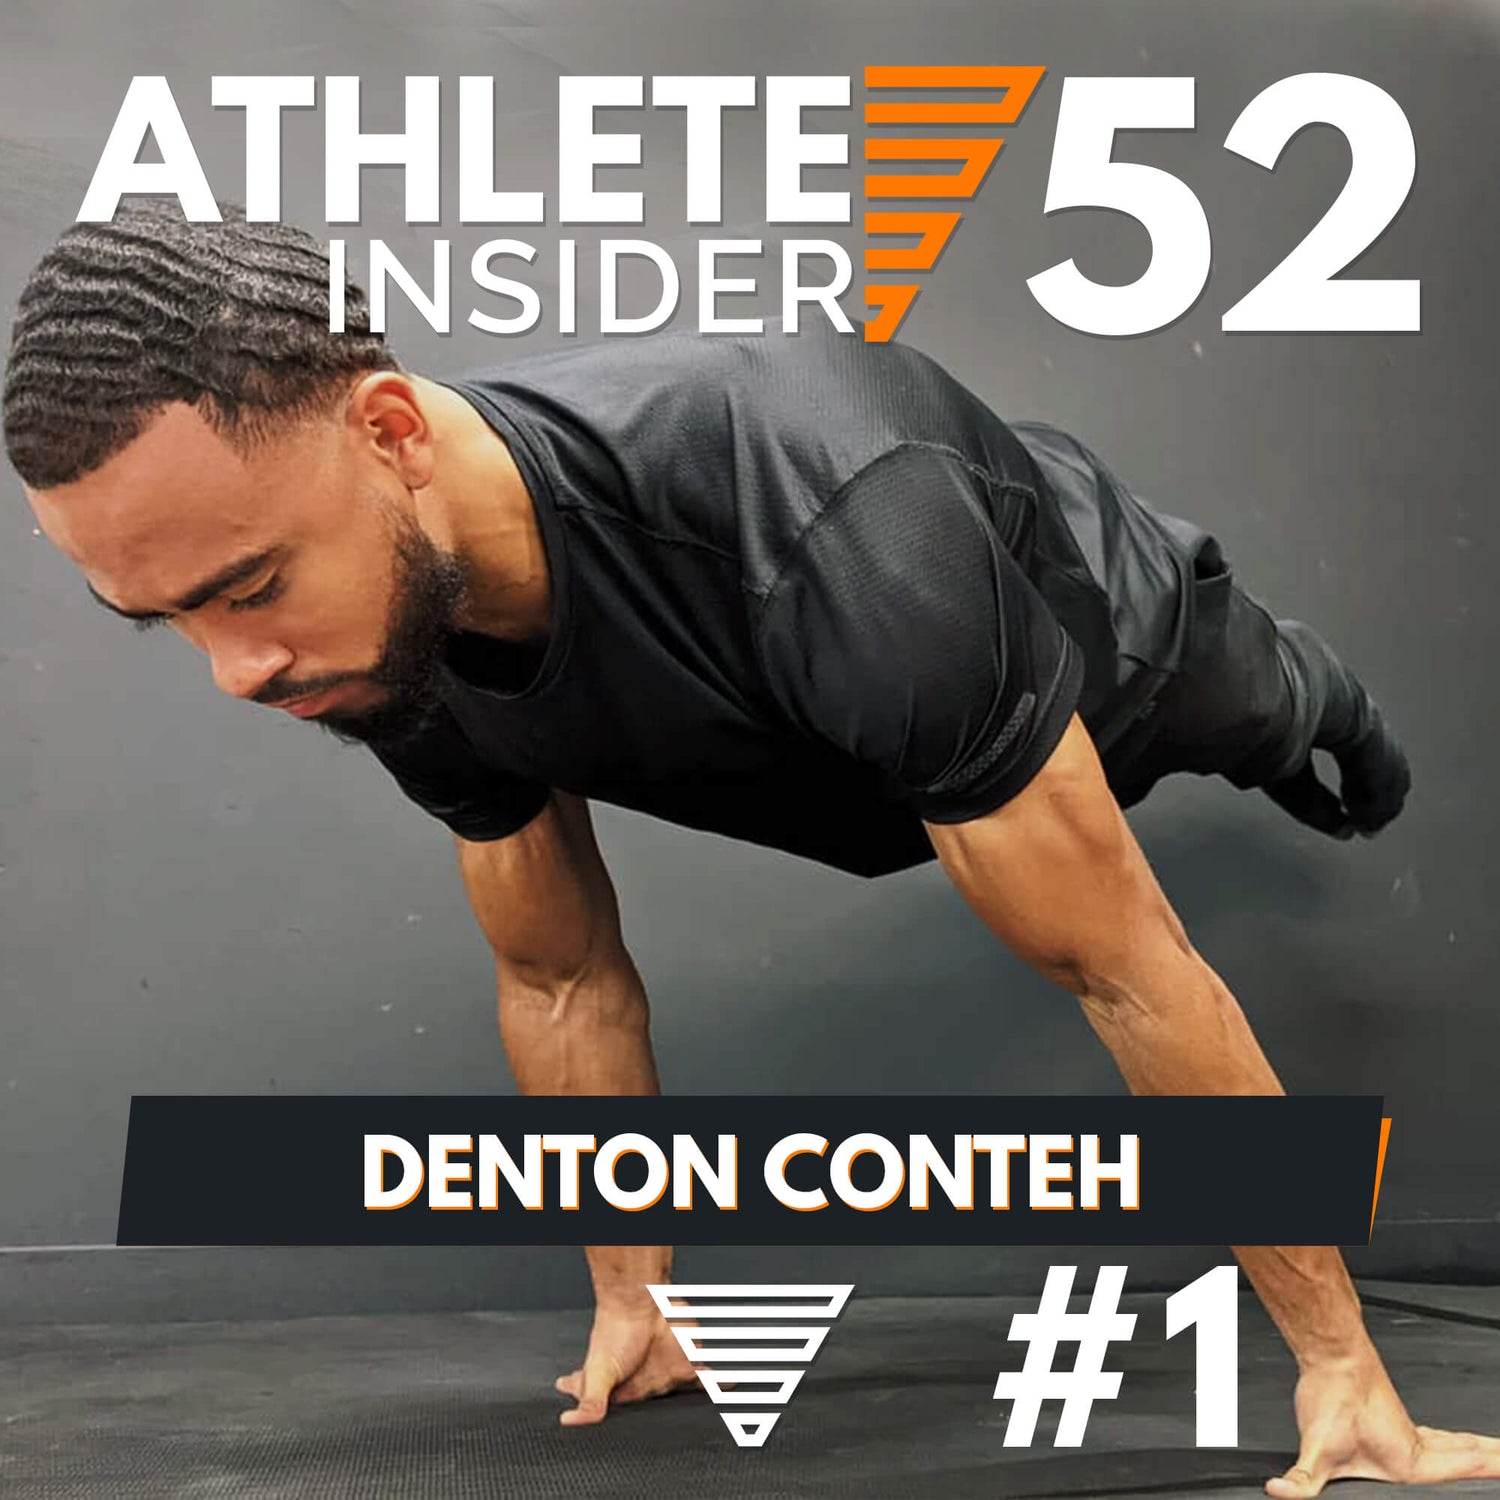 DENTON CONTEH | Full Planche + 240kg Deadlift | Interview | The Athlete Insider Podcast #52 Pt. I